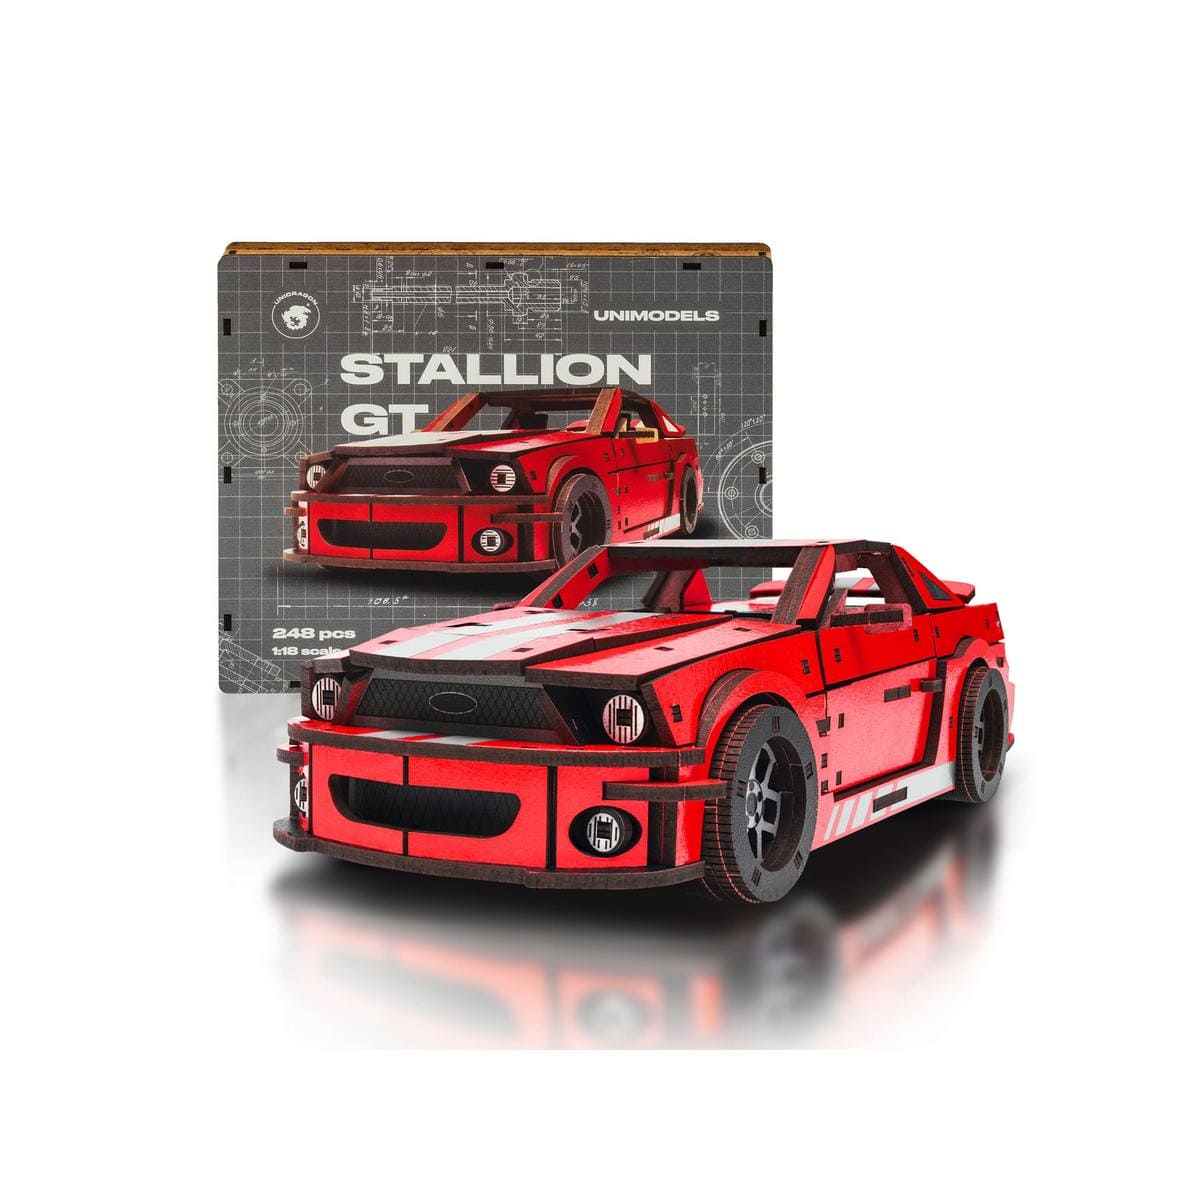 Unidragon Puzzle One Size — 25.5x11x7.5 cm — 248 pcs Stallion GT Red